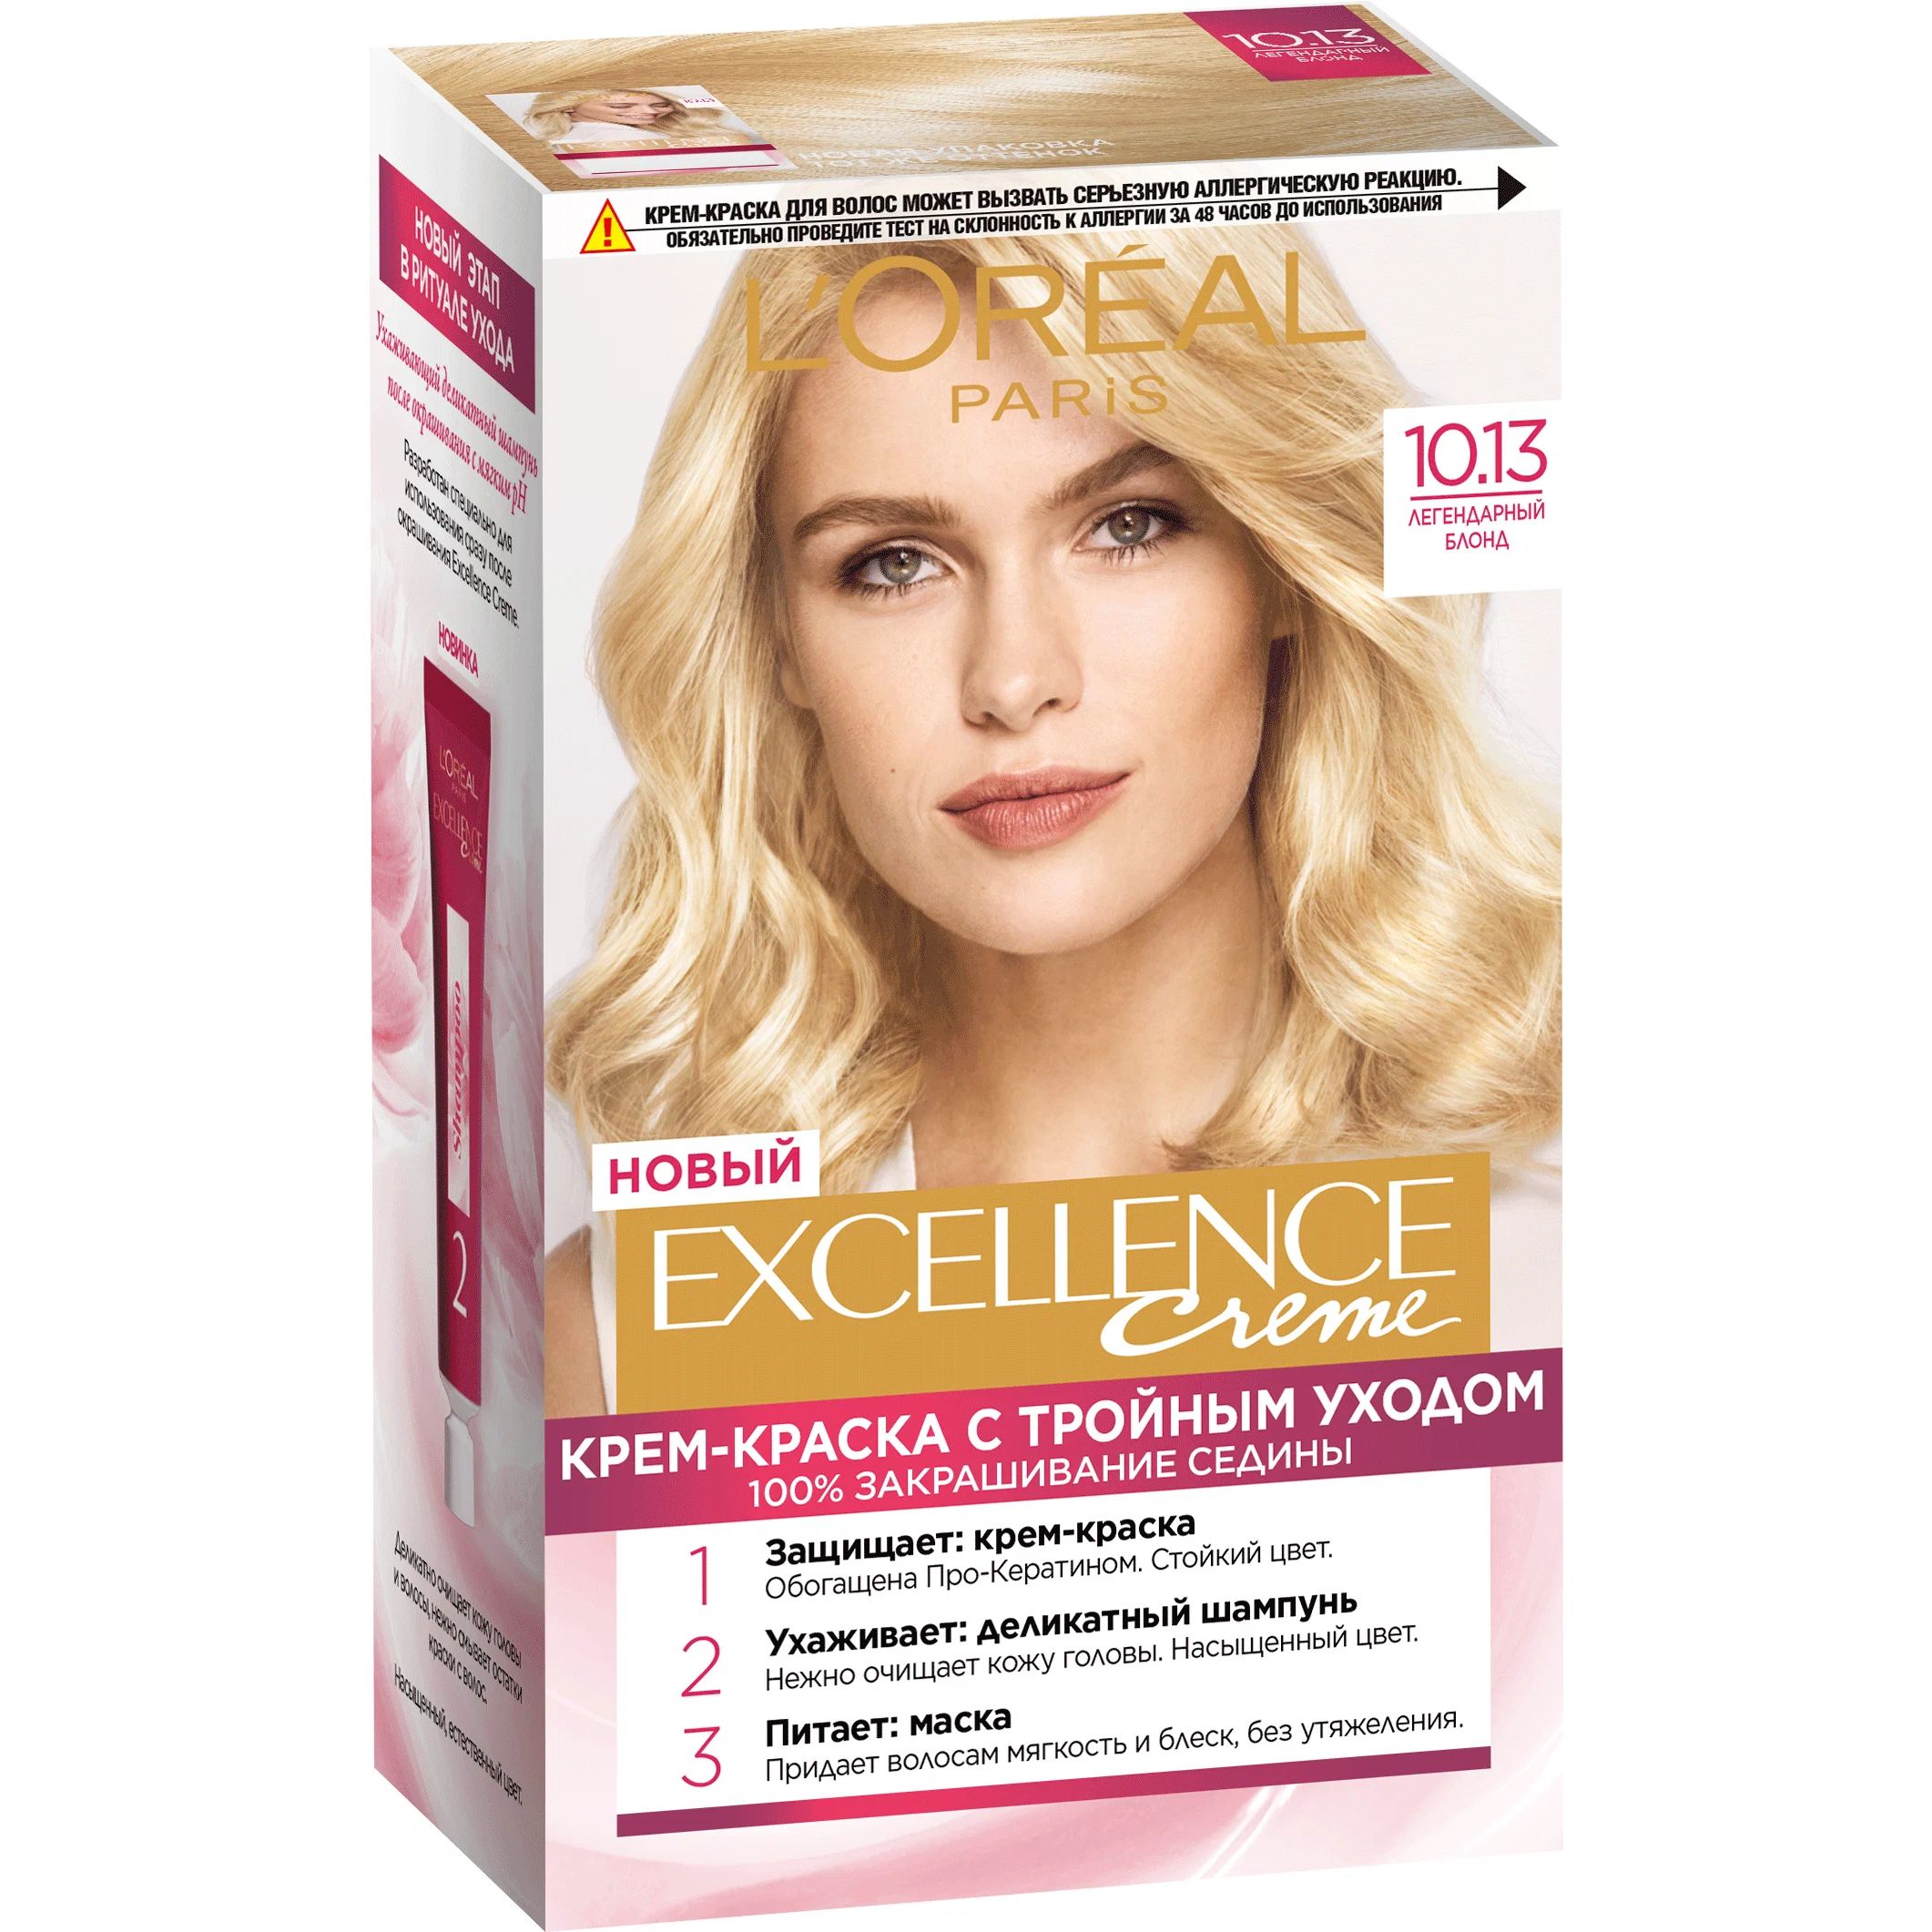 Крем-краска для волос L'Oreal Paris Excellence, 10.13 легендарный блонд, 176 мл the excellence dividend